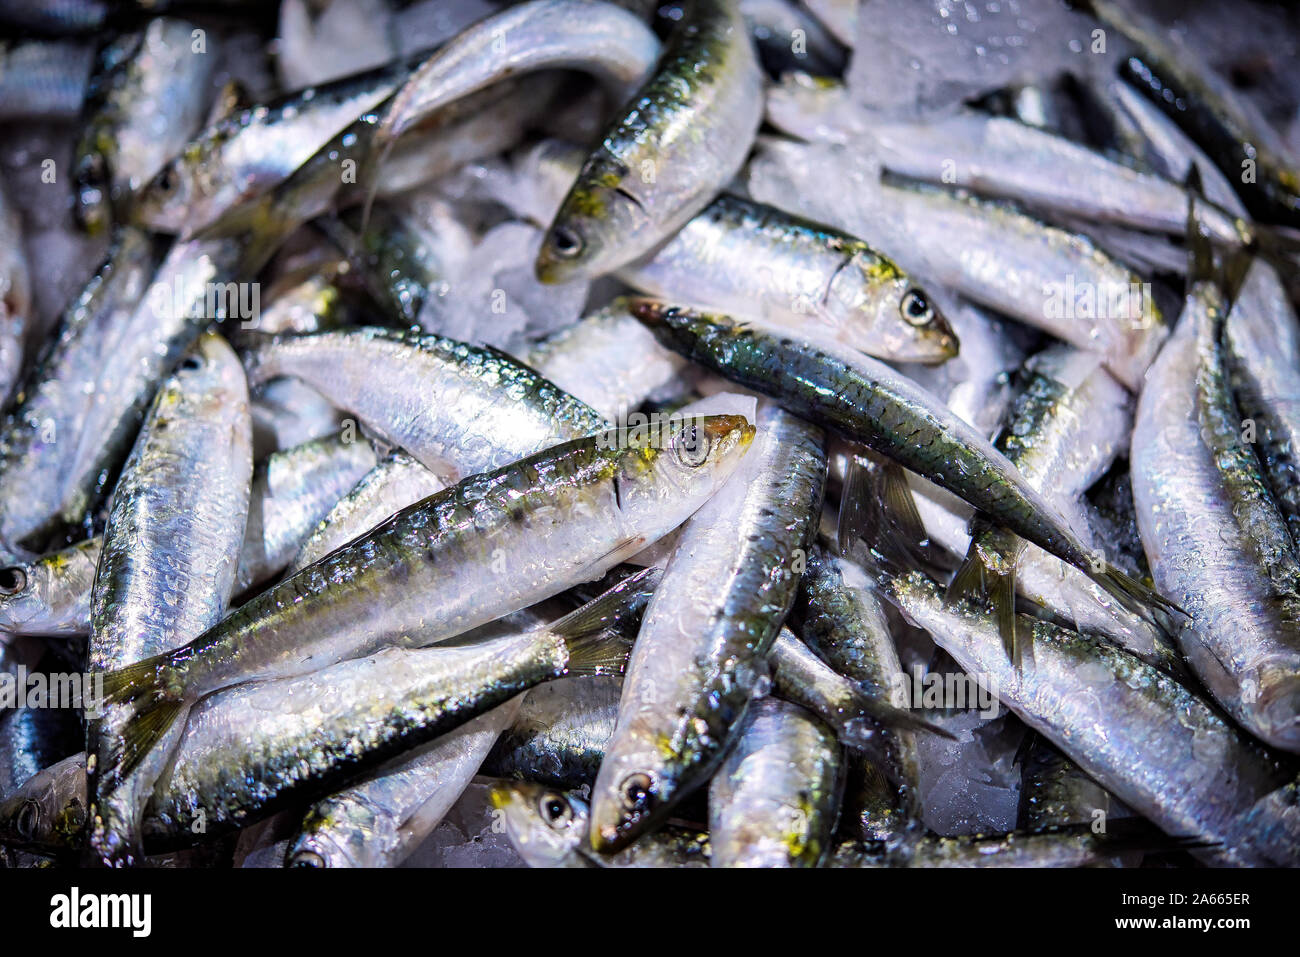 Frisches Bündel von kleinen portugiesischen Sardinen auf Eis Ausstellung auf dem Fischmarkt. Hintergrund. Stockfoto